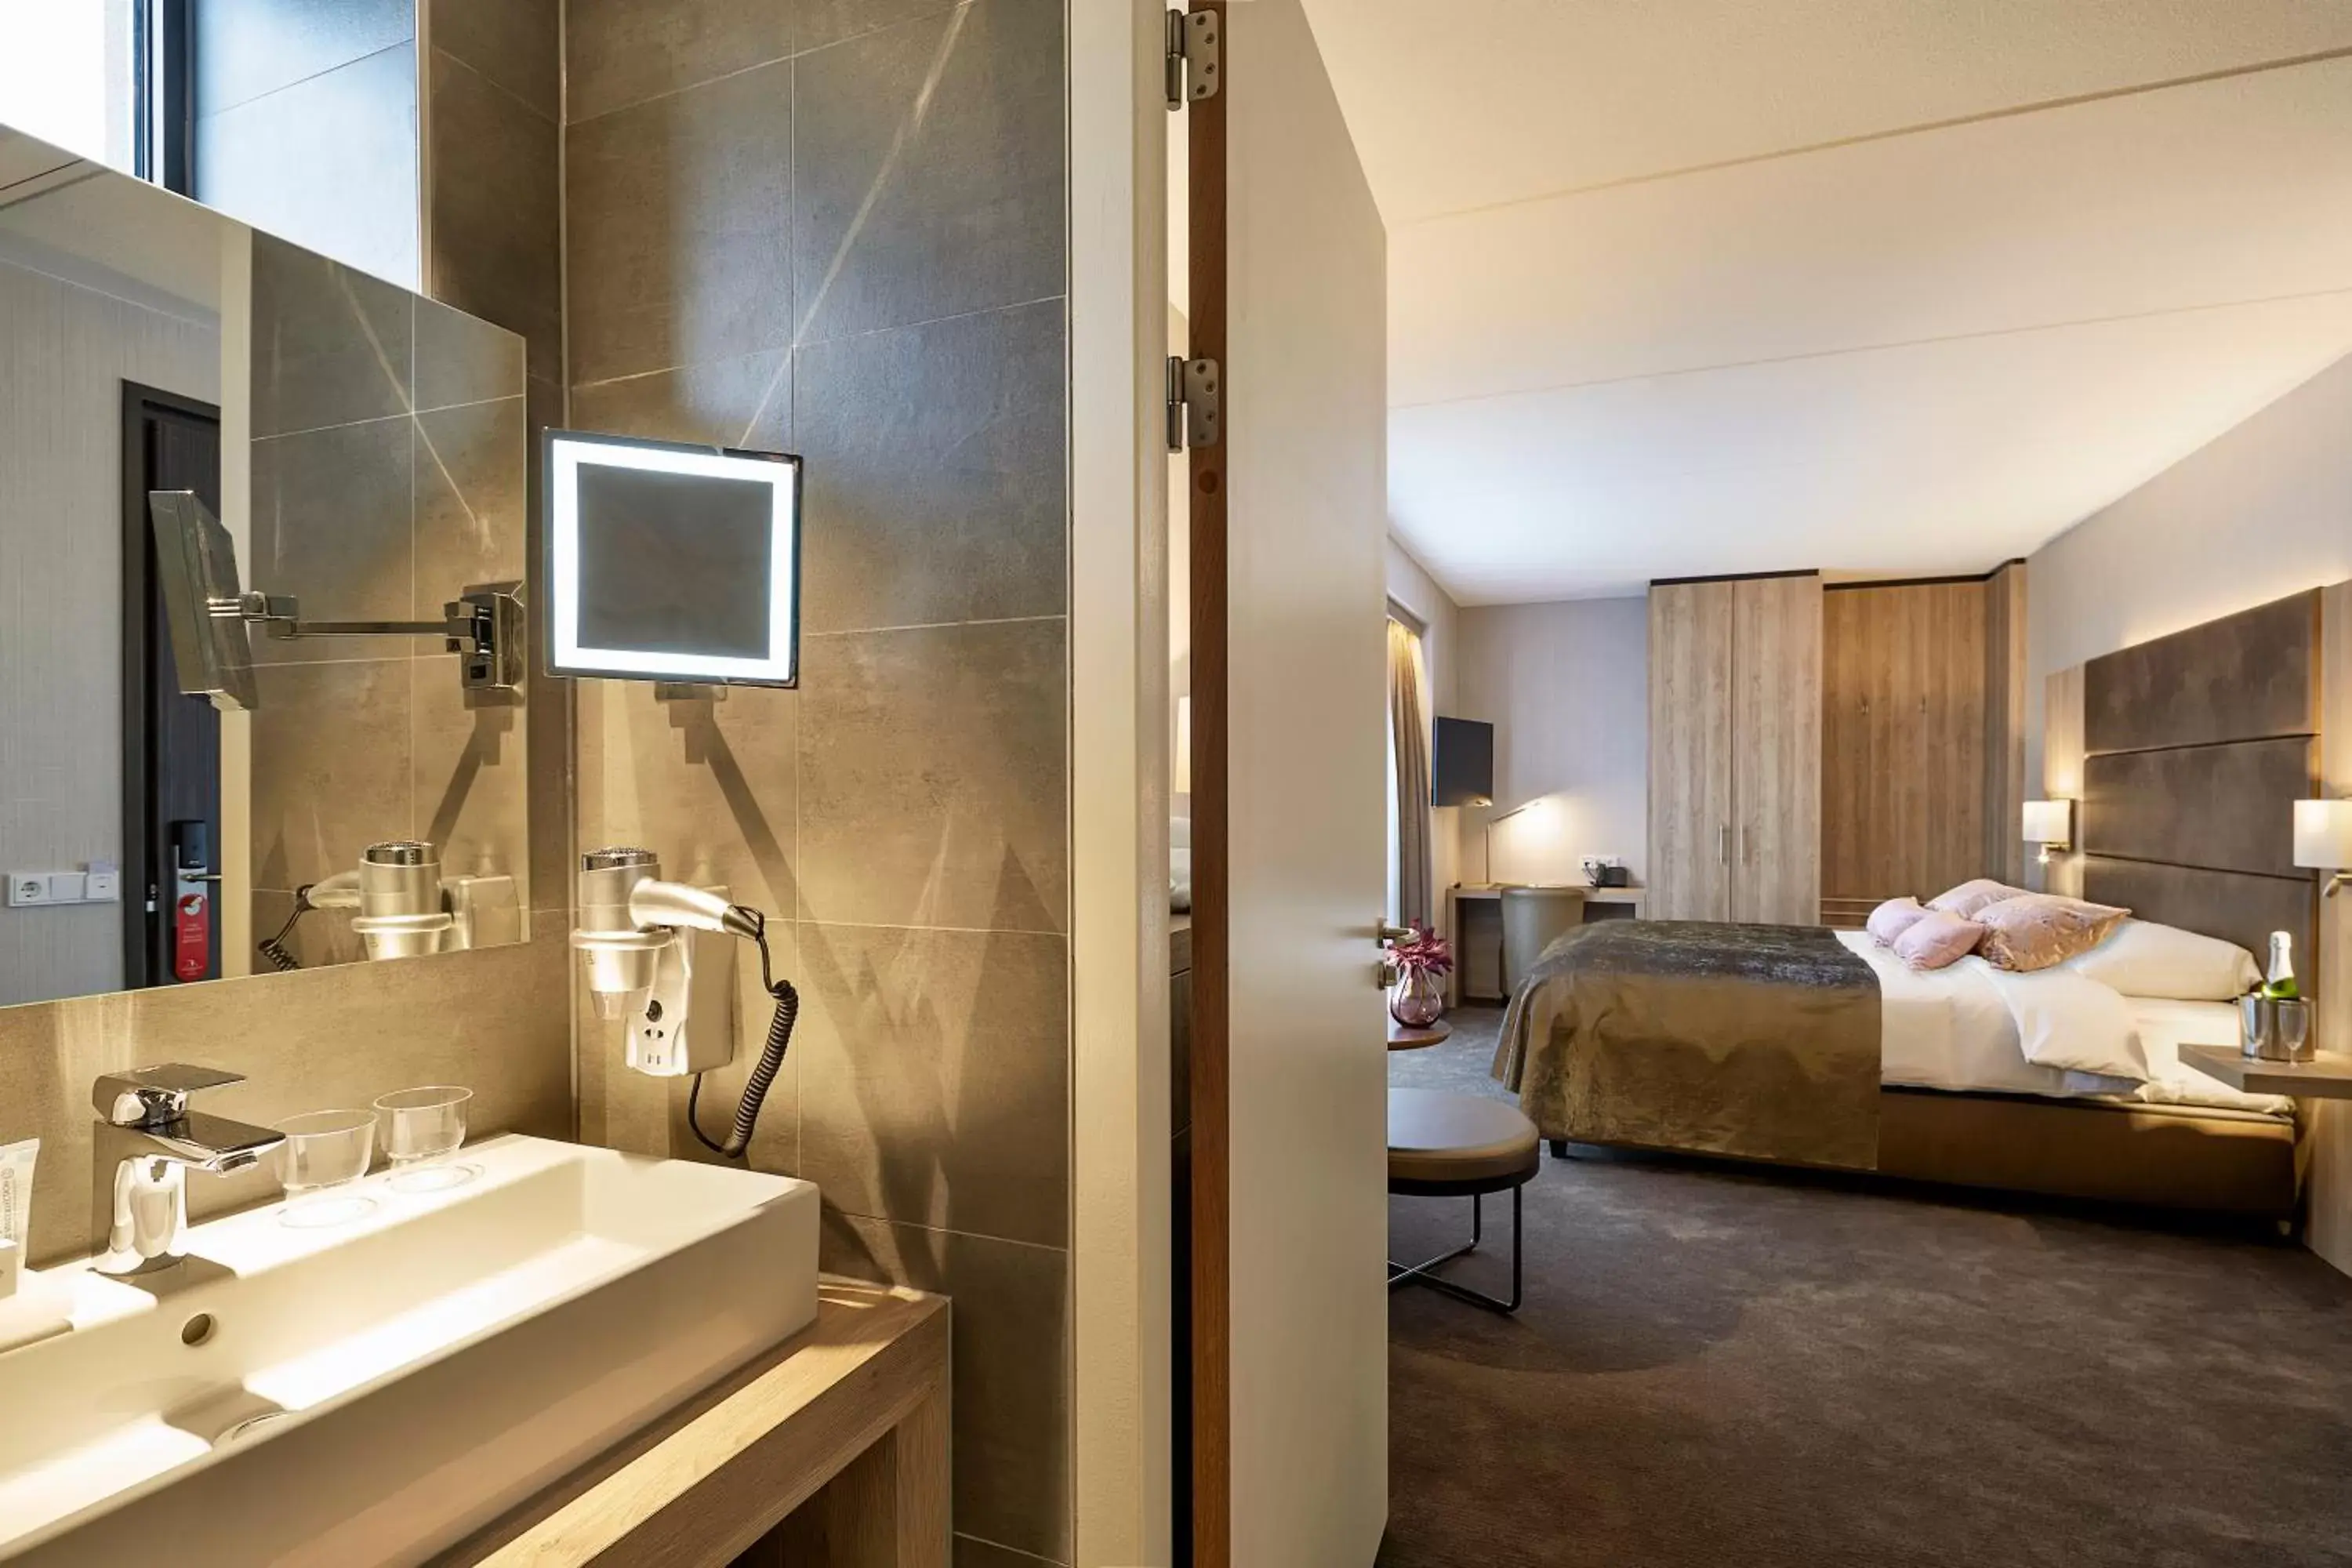 Photo of the whole room, Bathroom in Van der Valk Hotel Breda